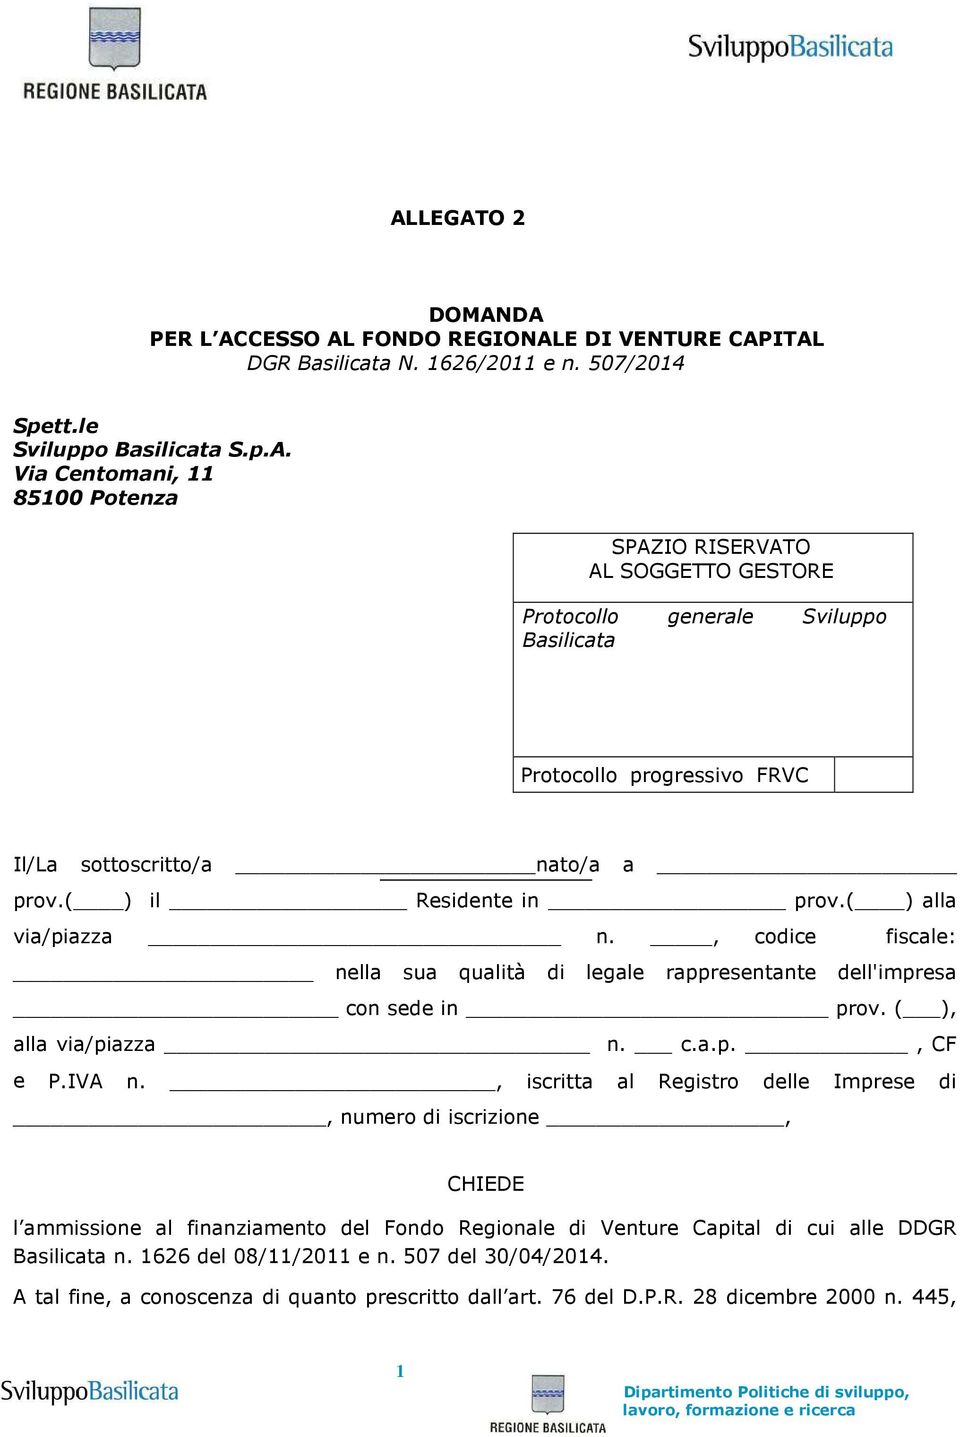 IVA n., iscritta al Registro delle Imprese di, numero di iscrizione, CHIEDE l ammissione al finanziamento del Fondo Regionale di Venture Capital di cui alle DDGR Basilicata n. 626 del 08//20 e n.